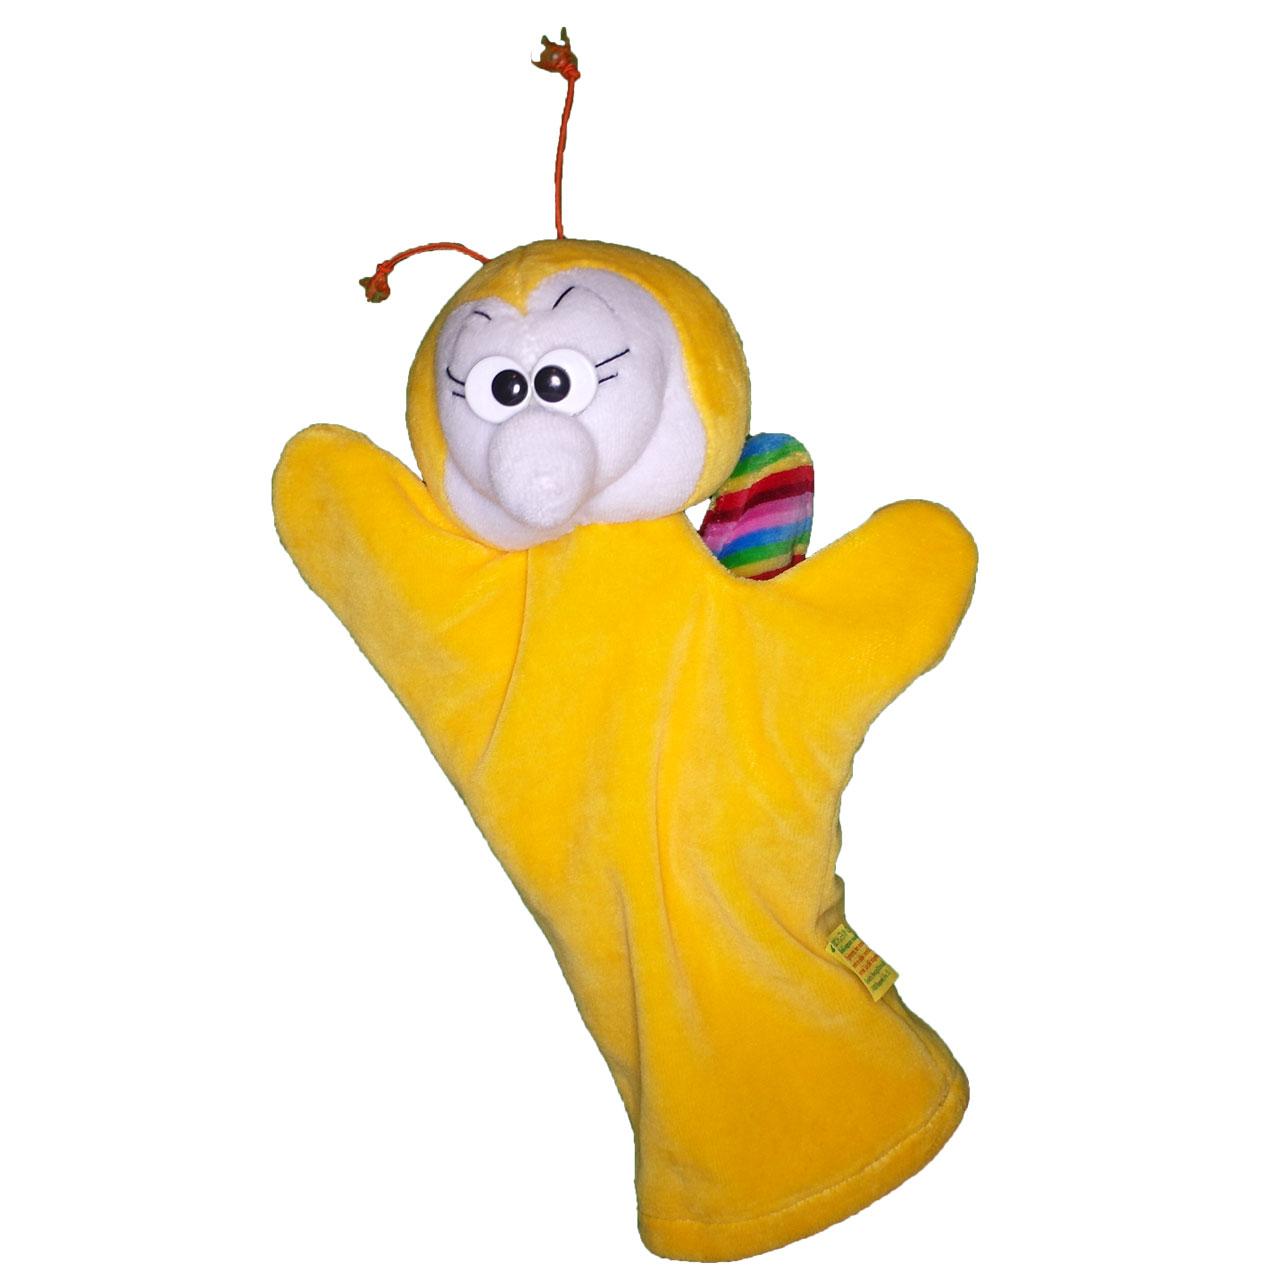 Guanto marionetta farfalla giallo-arancio